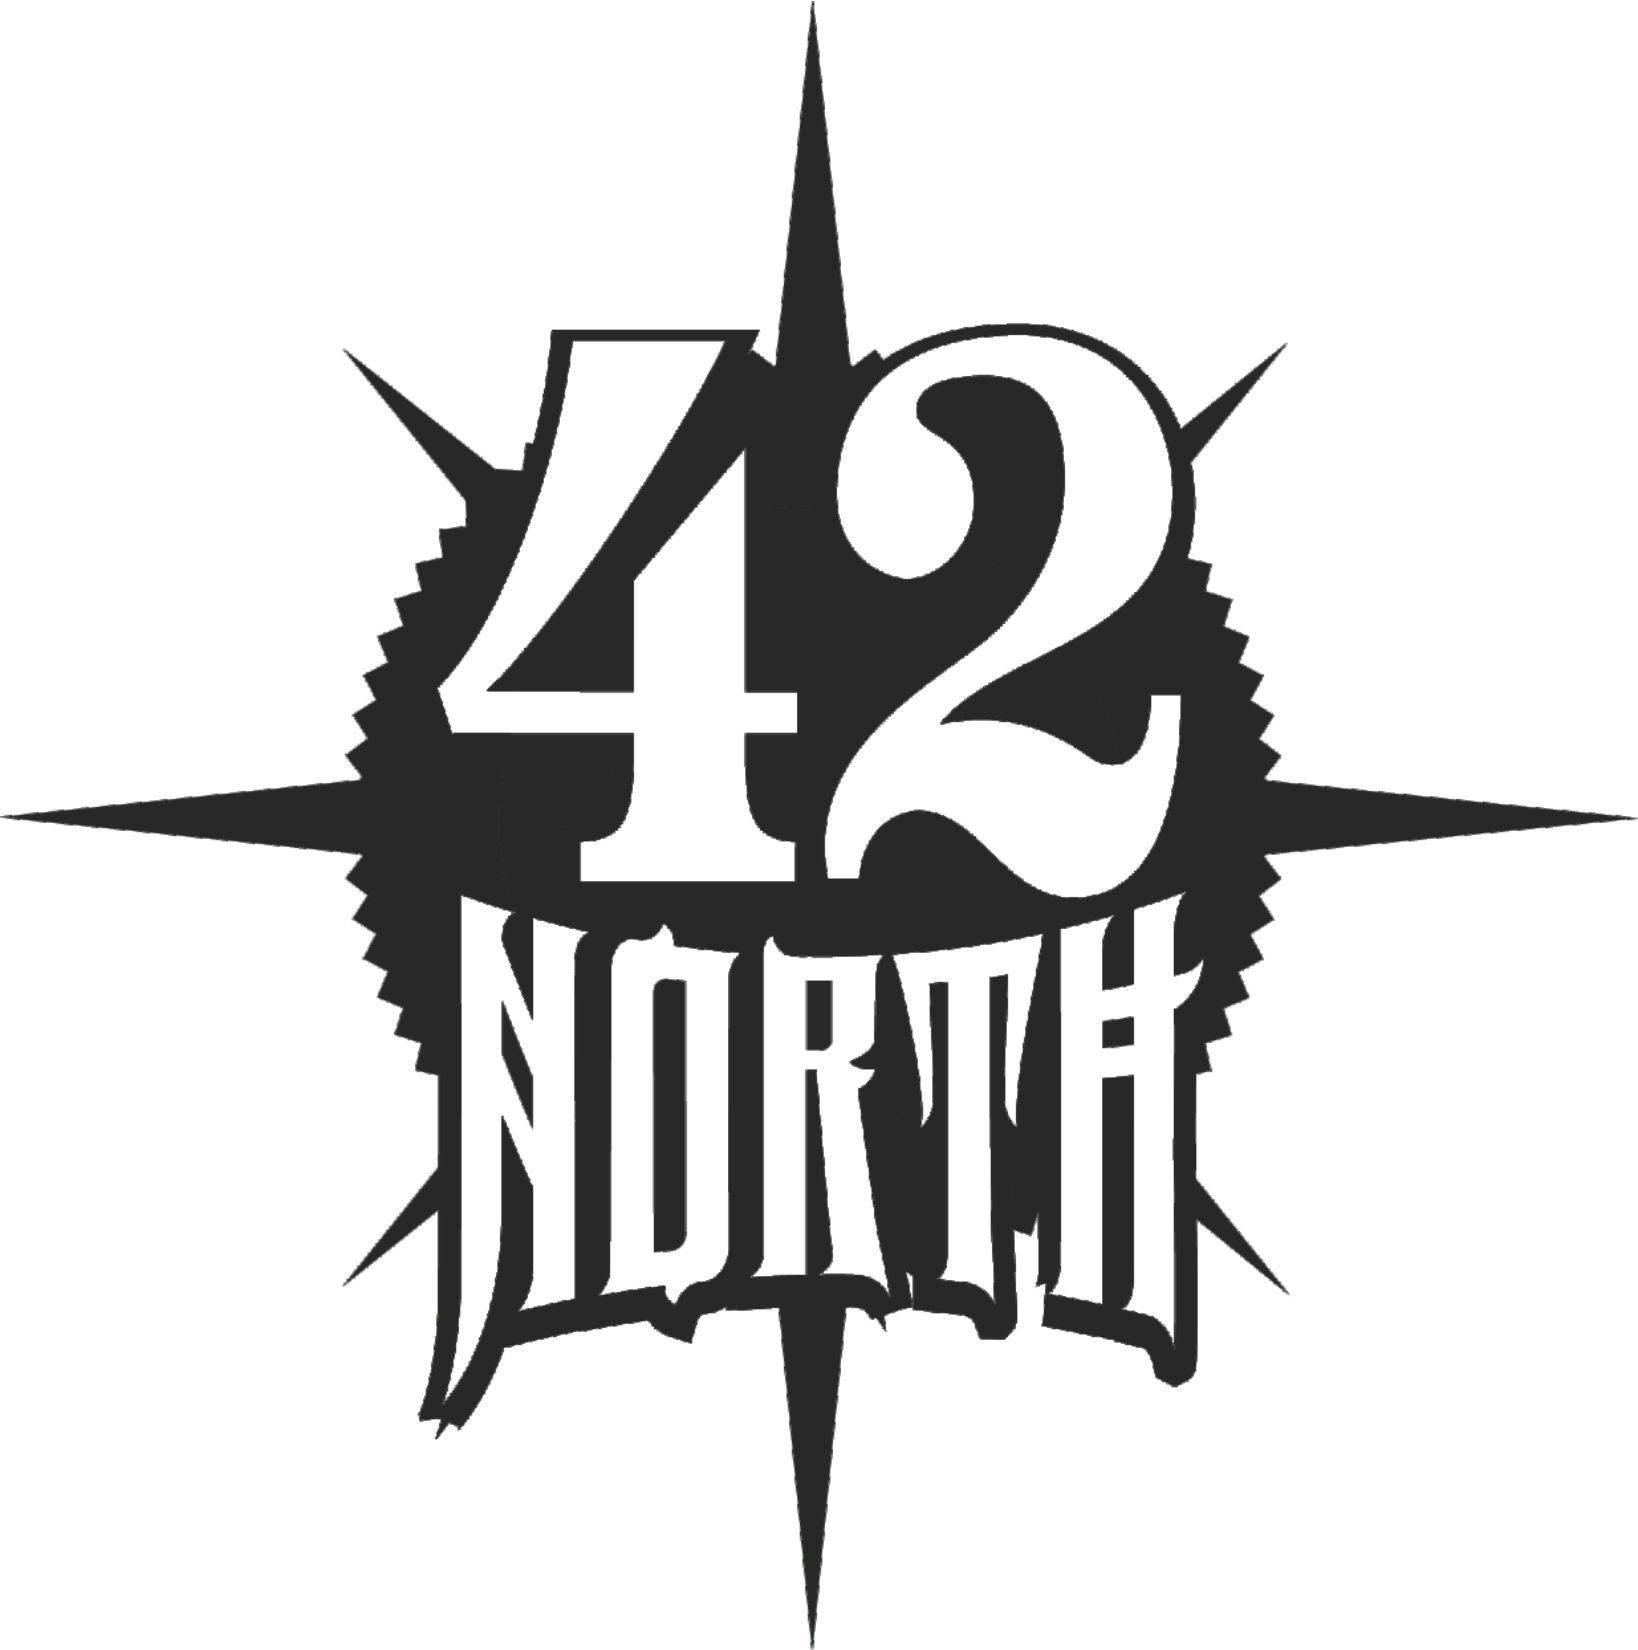 42 North Brewing